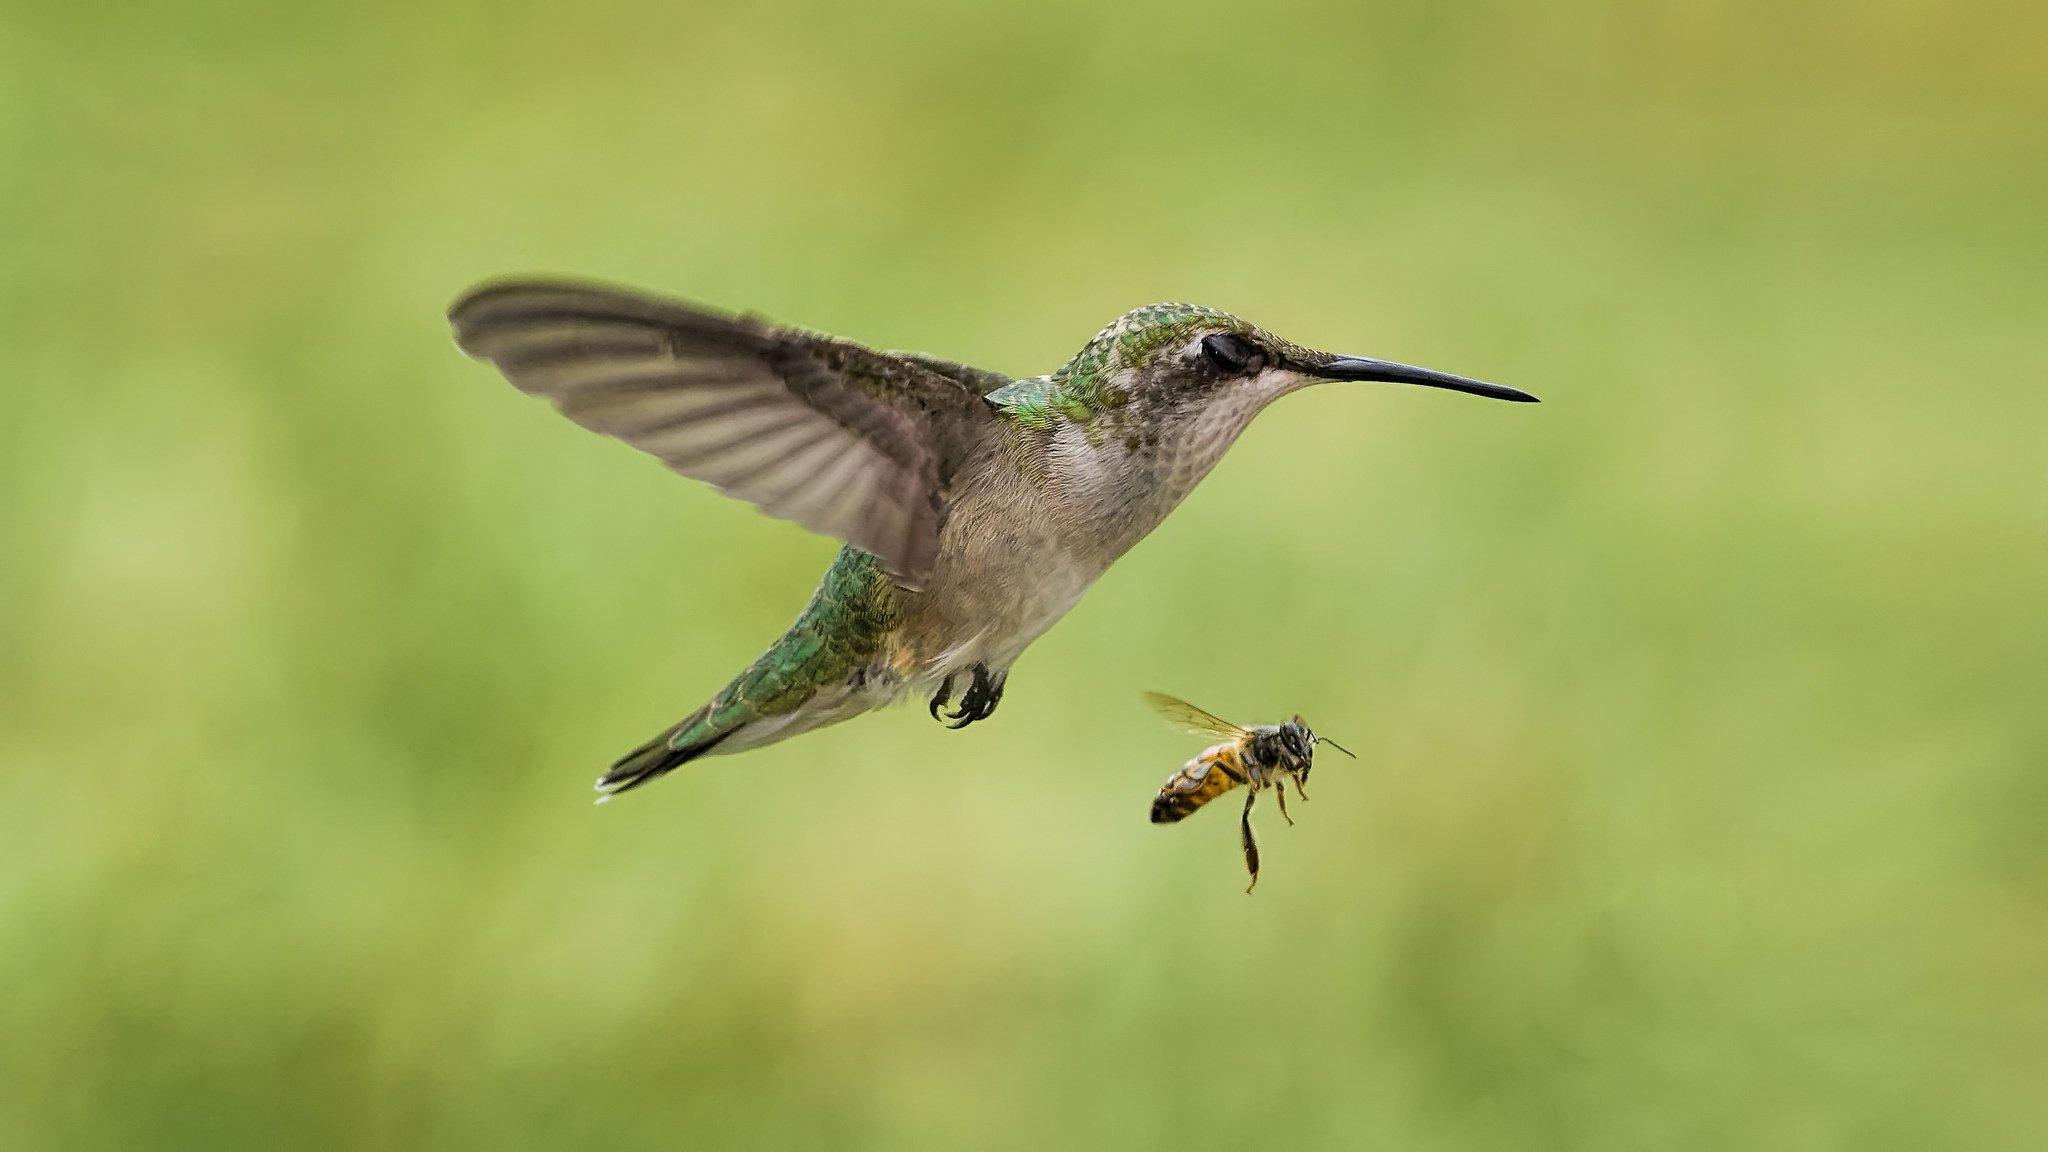 Сравнение размеров колибри и пчелы